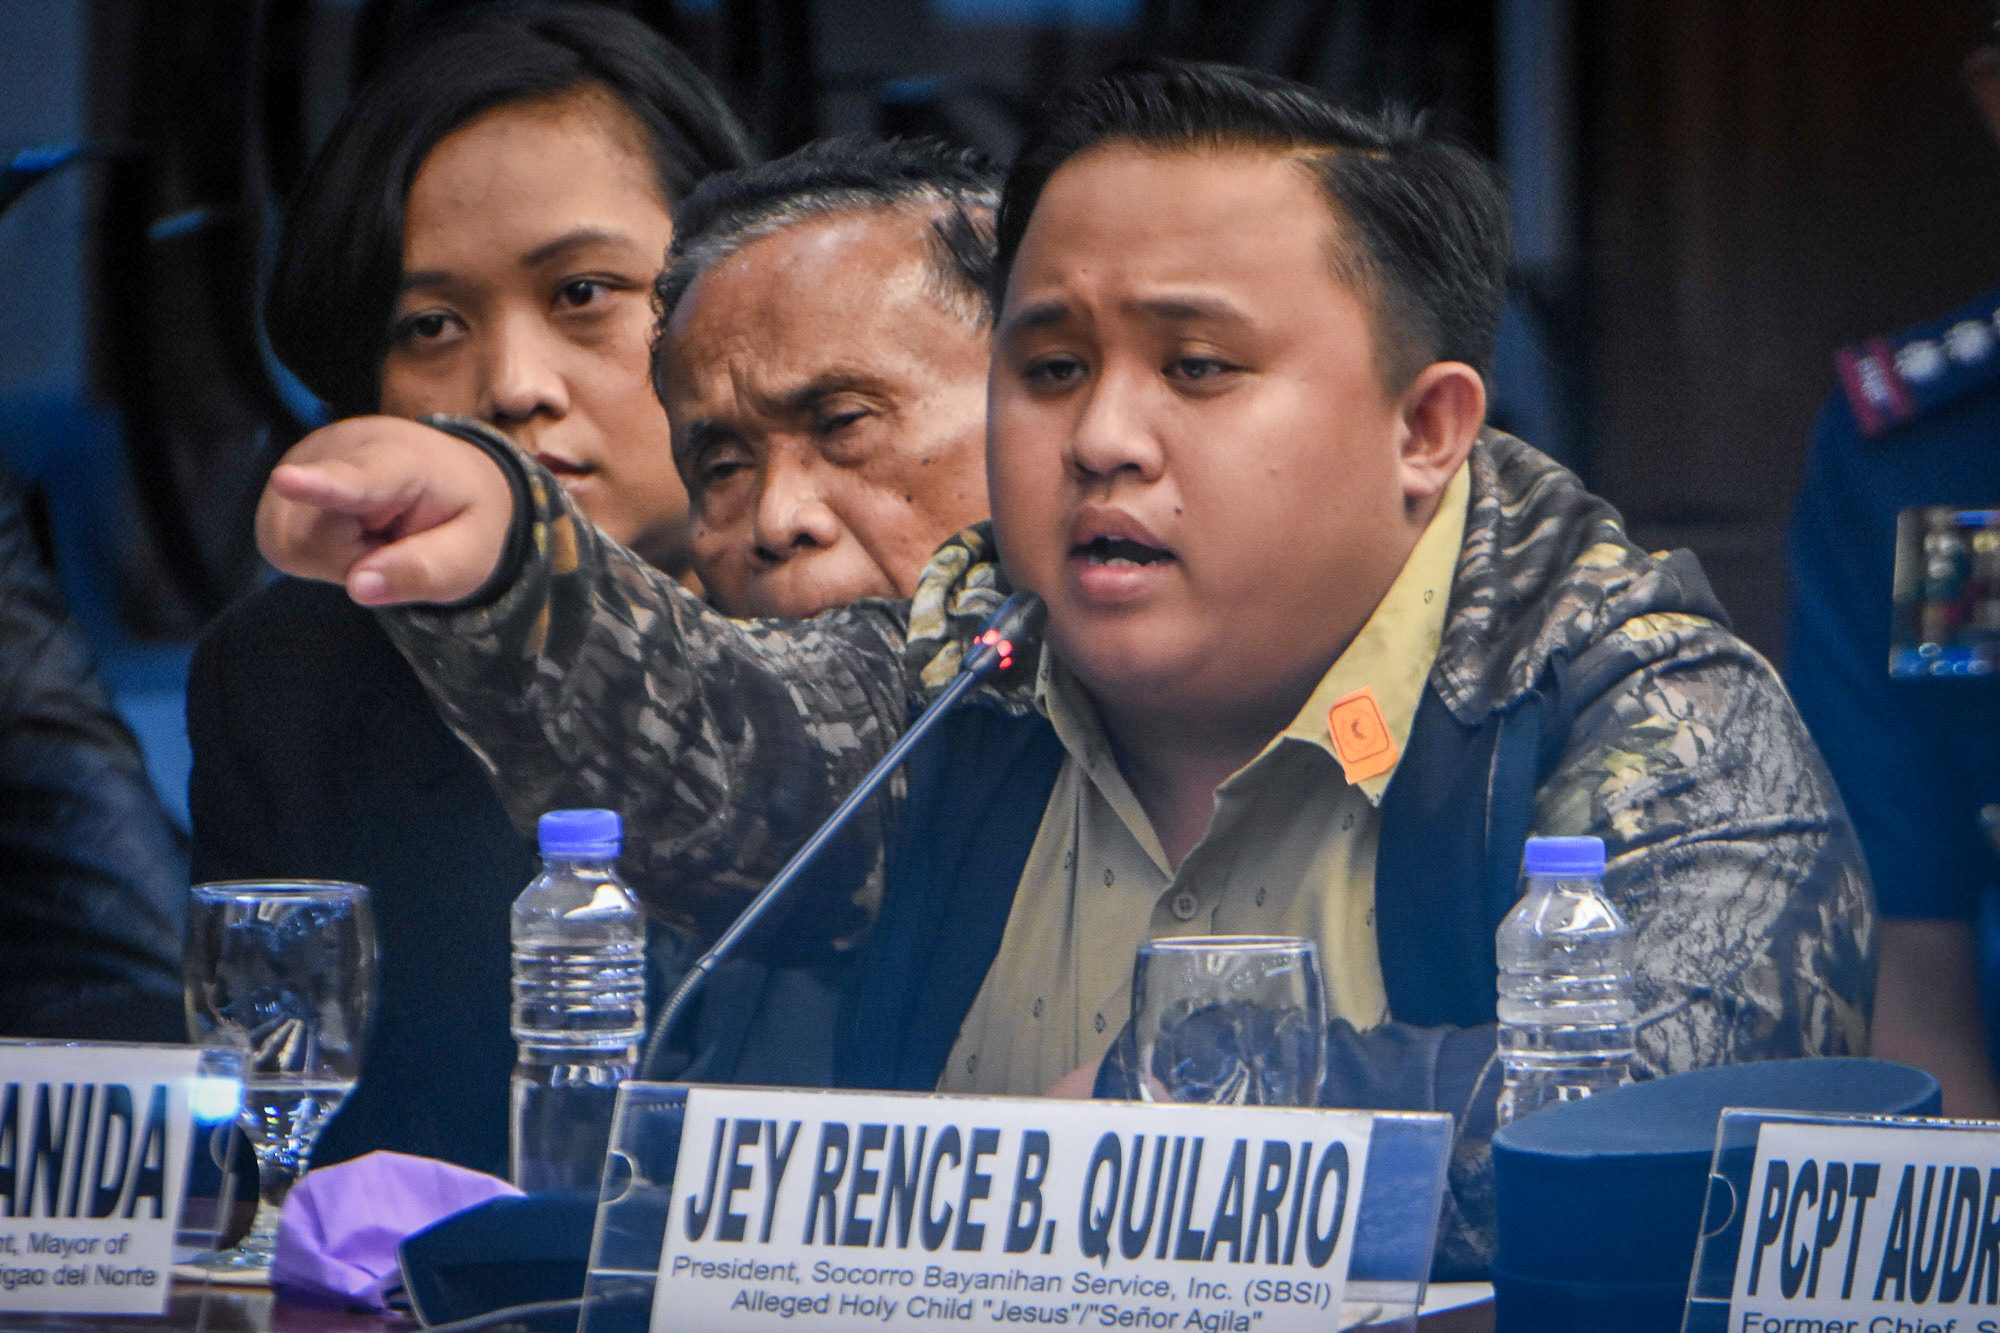 Who is Surigao del Norte ‘cult’ leader Jey Rence Quilario?